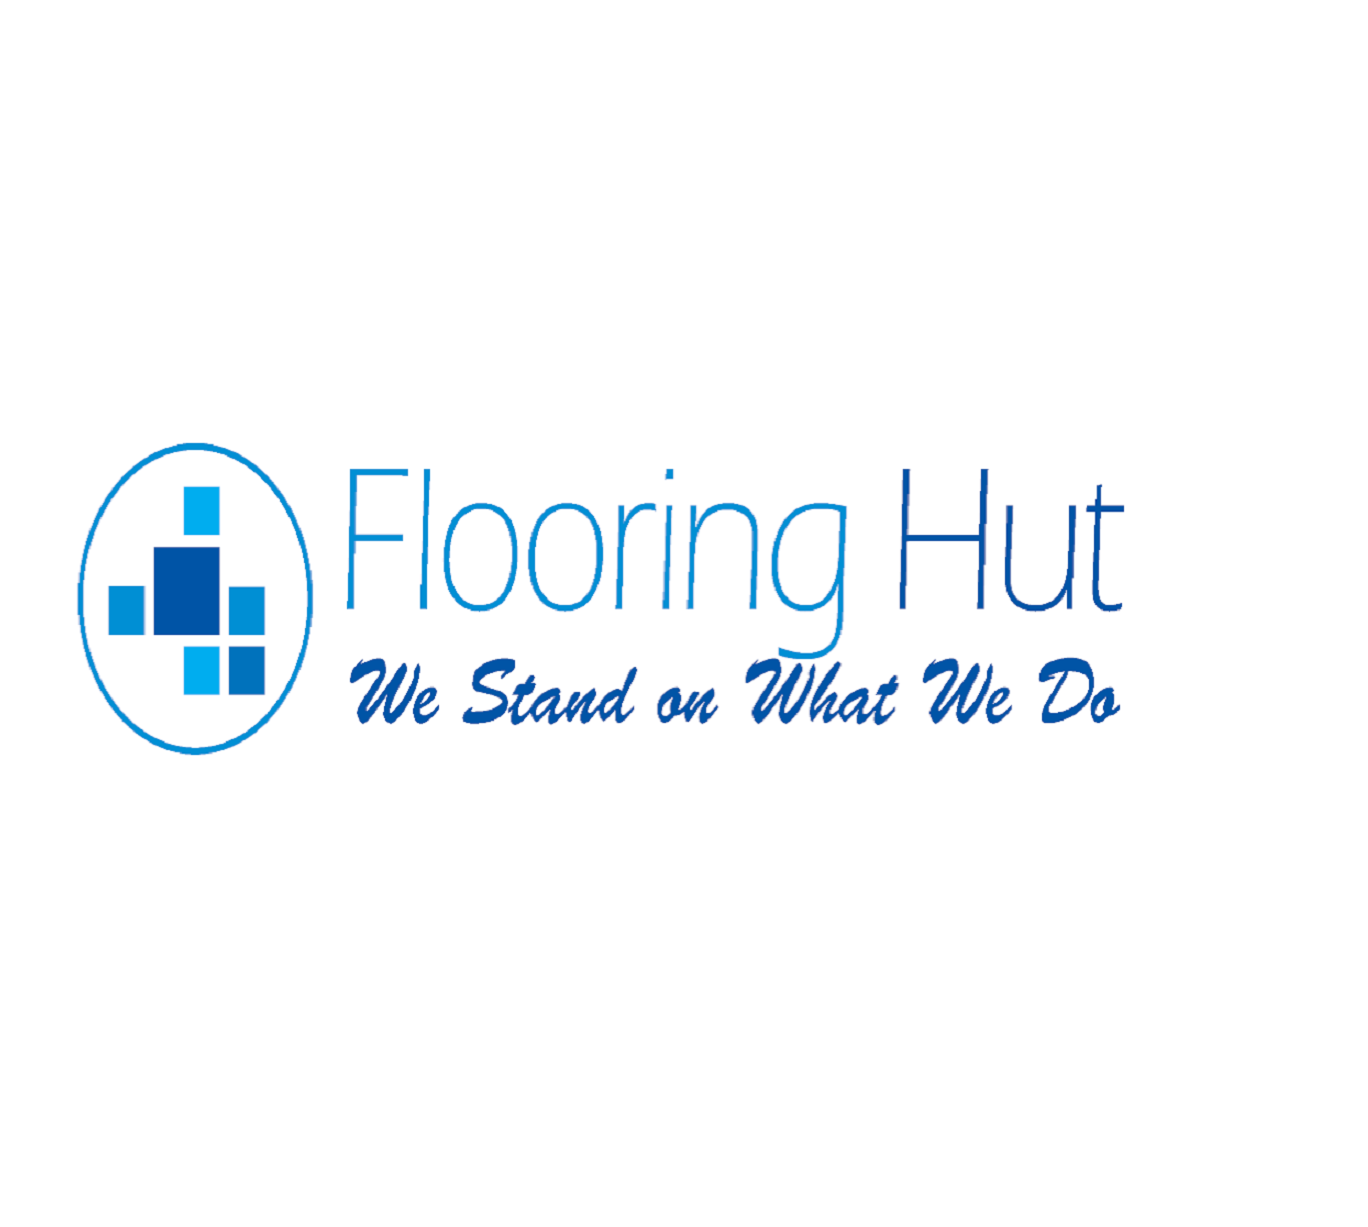 Flooring Hut logo